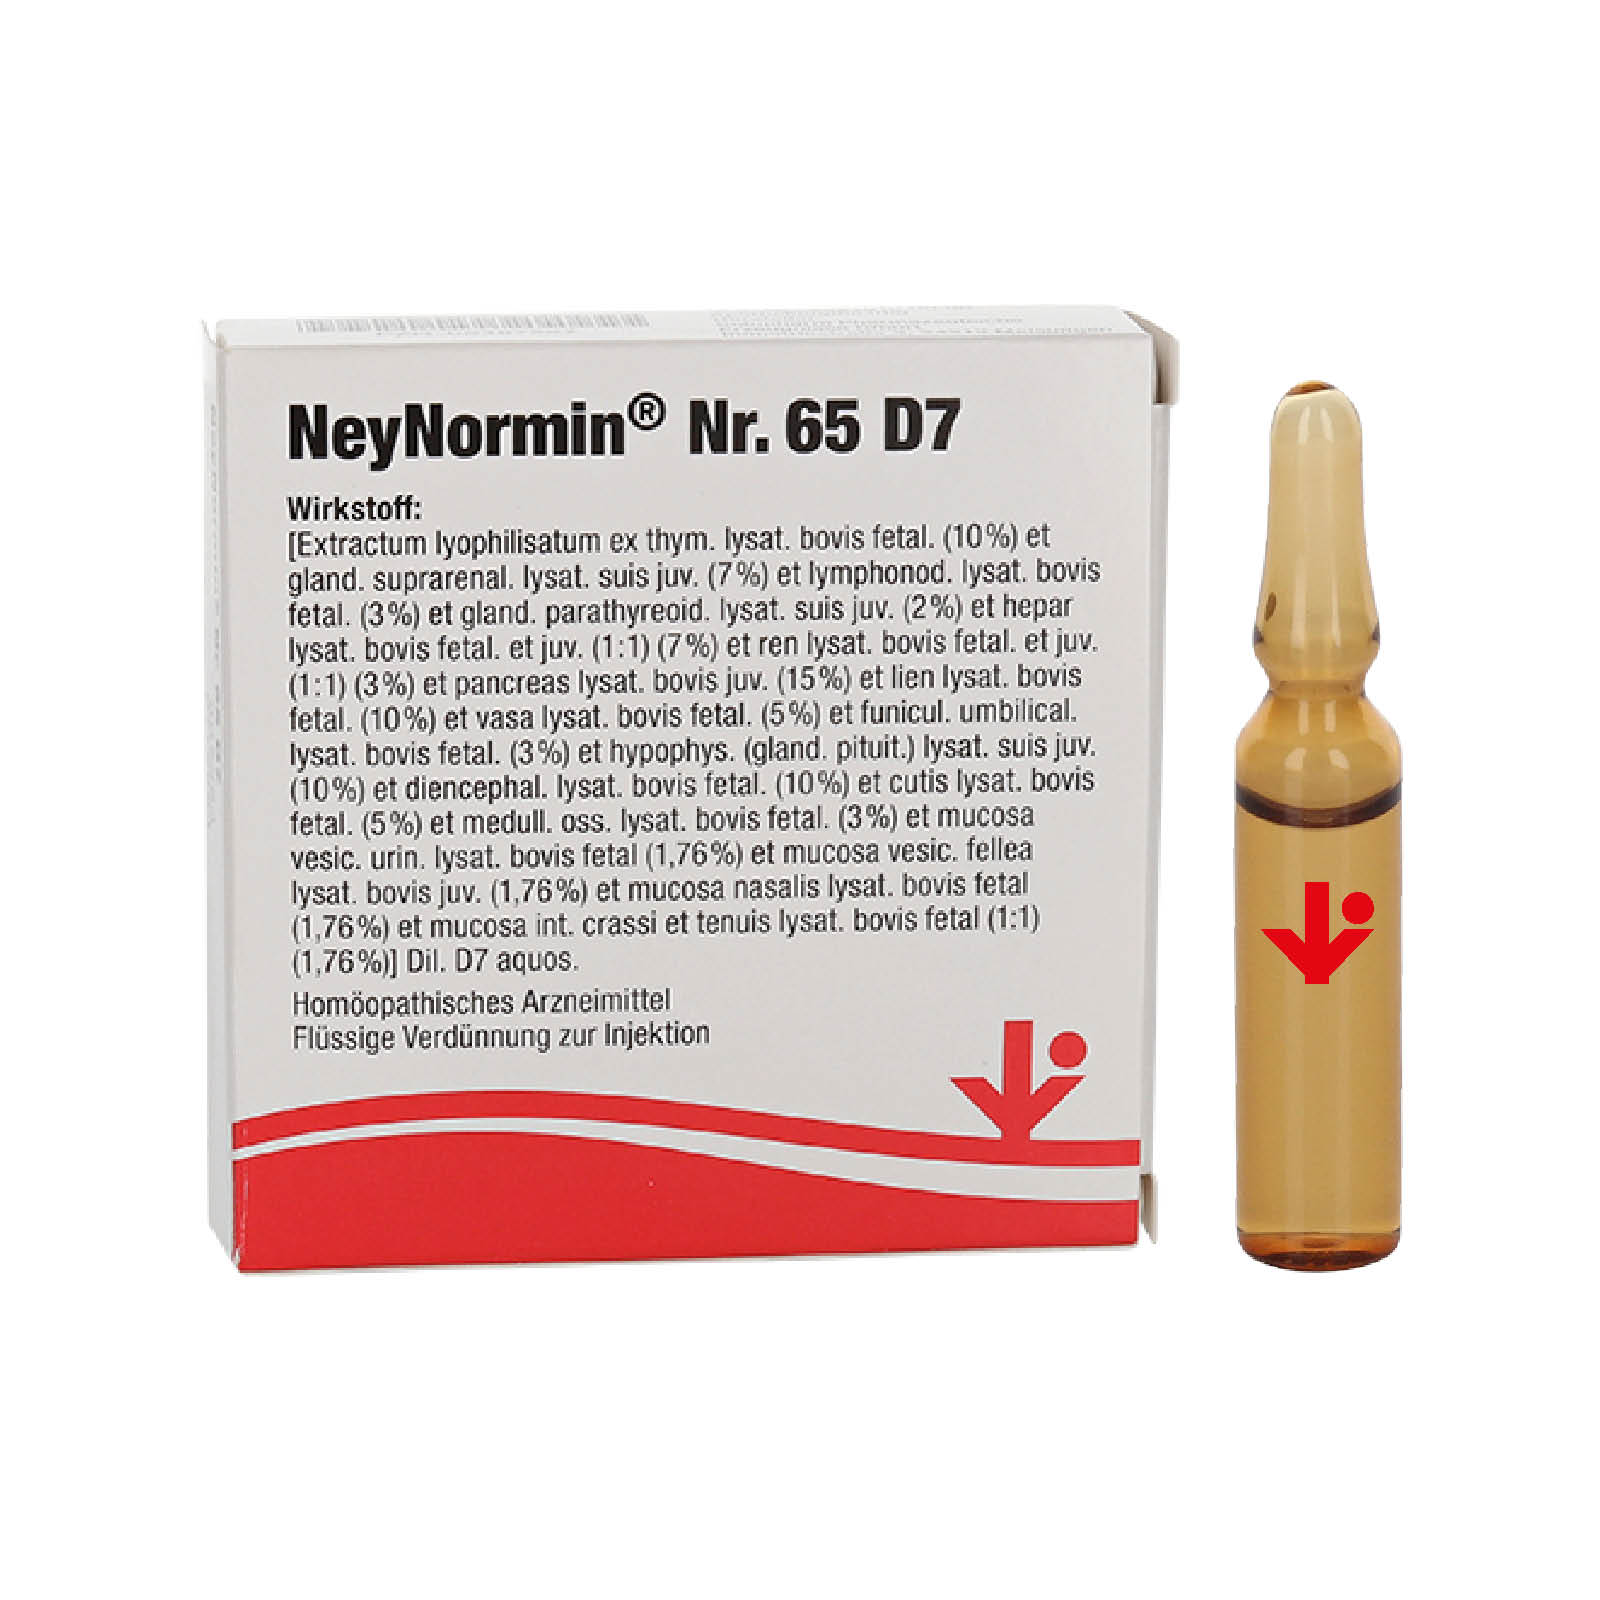 NeyNormin® Nr. 65 D7